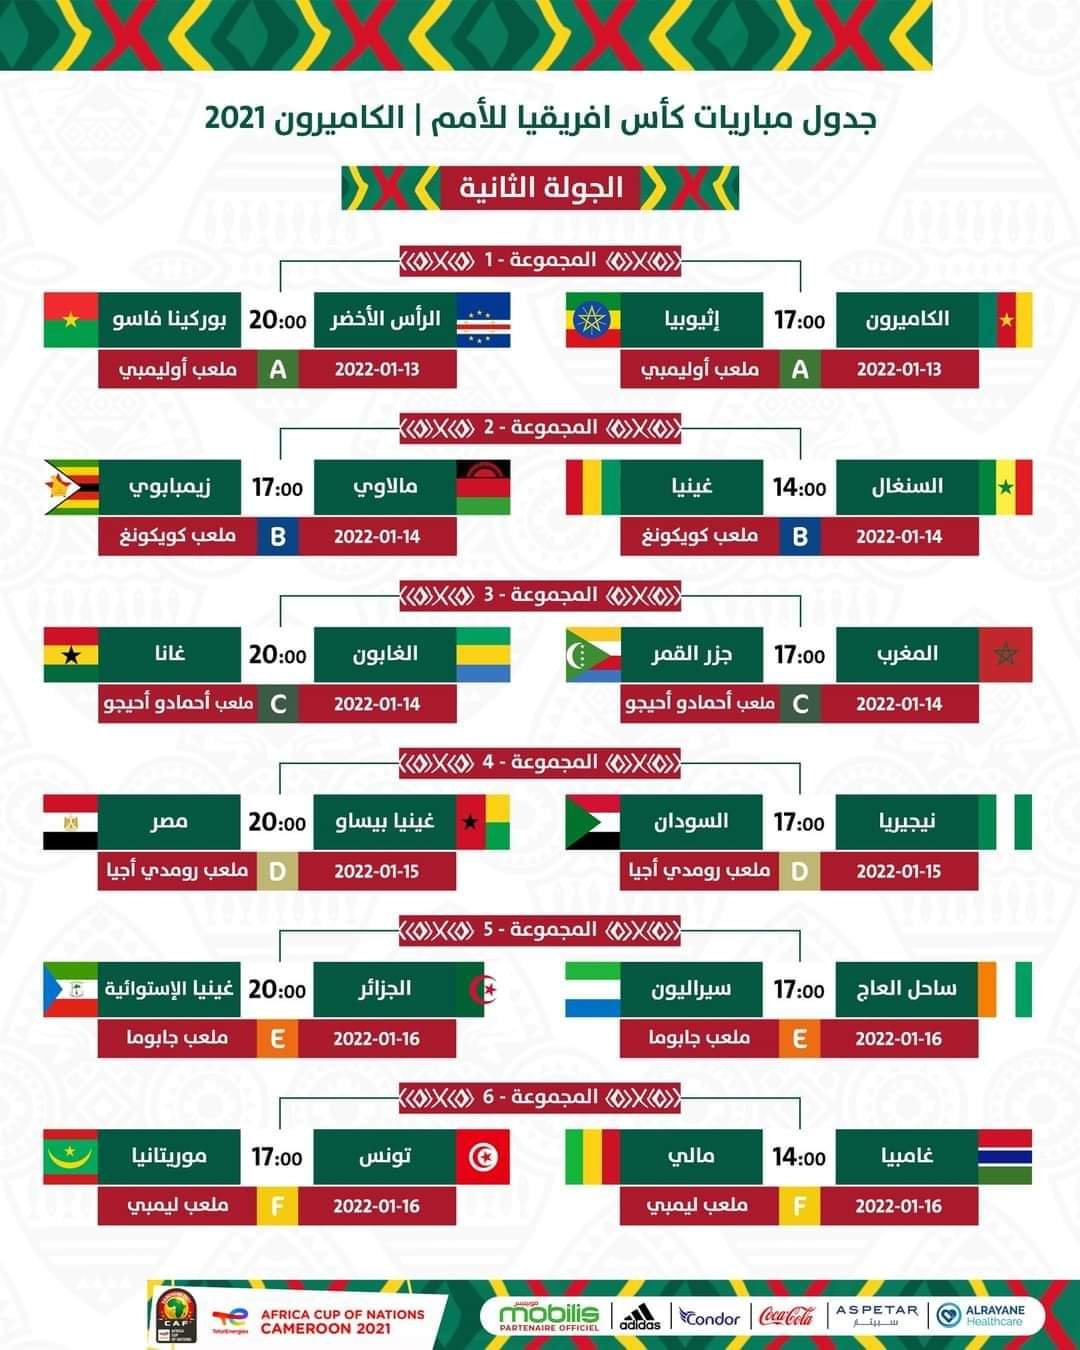 الافريقية الامم 2022 جدول كاس مباريات جدول مباريات